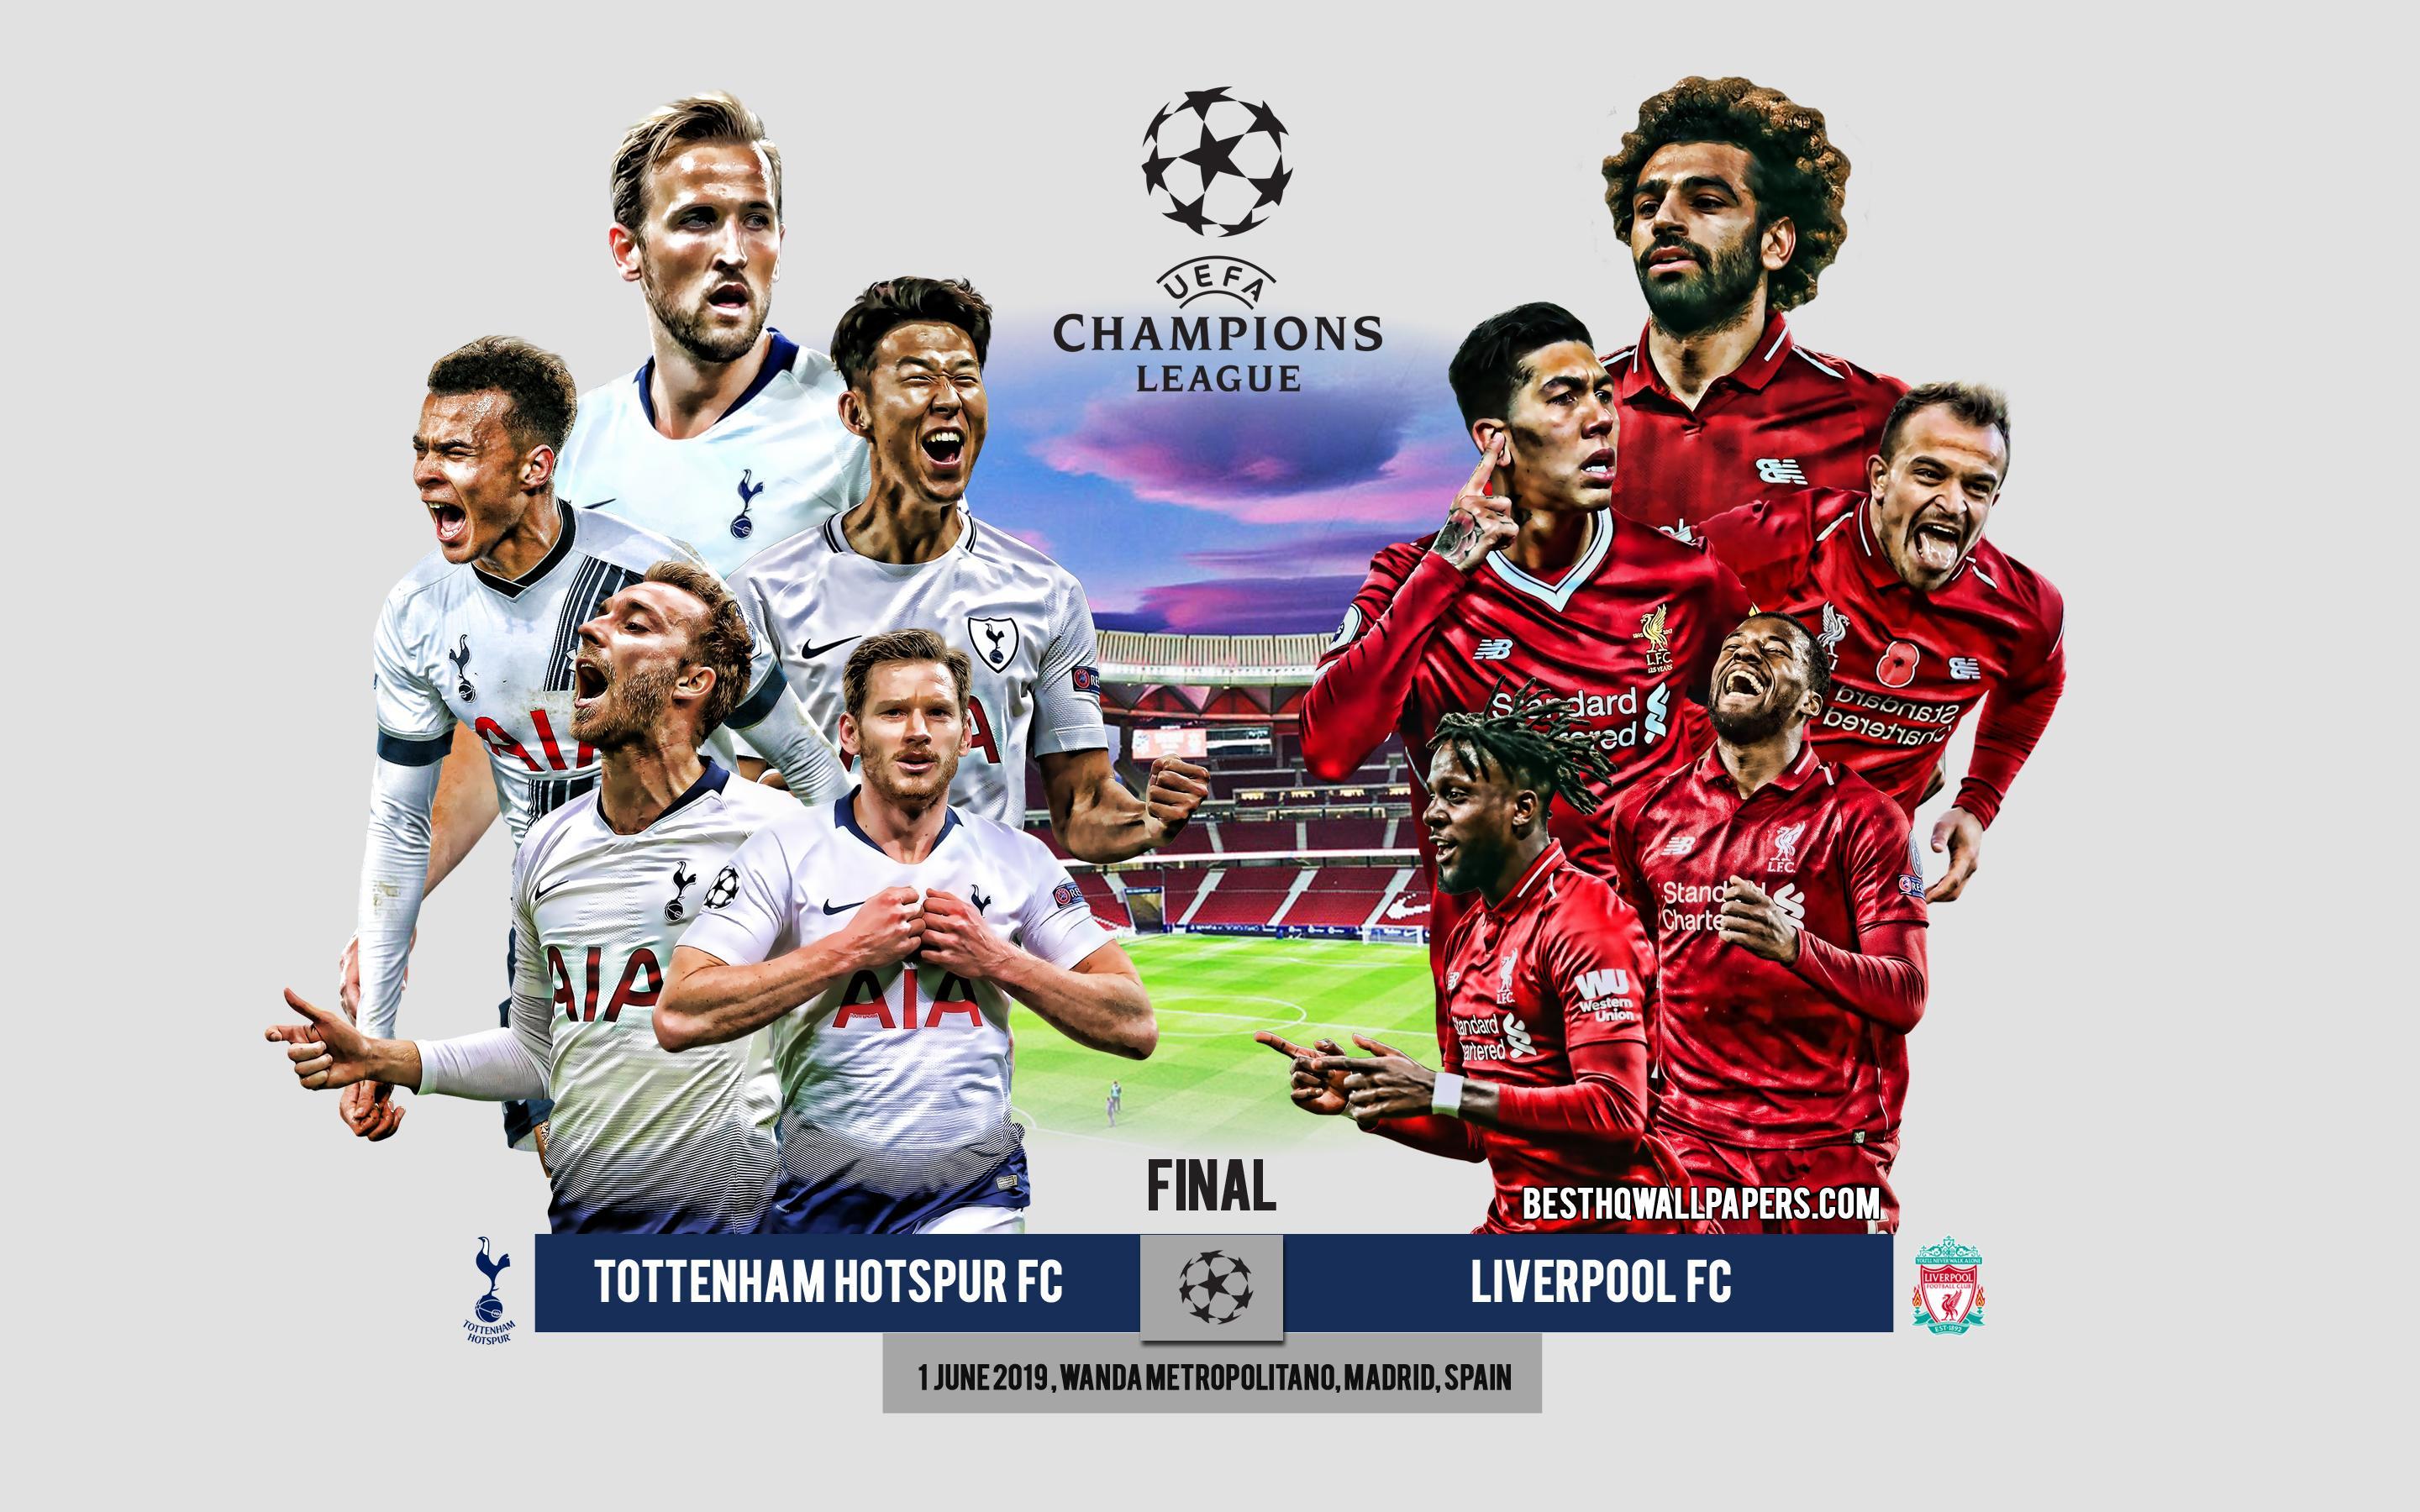 Download wallpaper Tottenham Hotspur FC vs Liverpool FC, promo